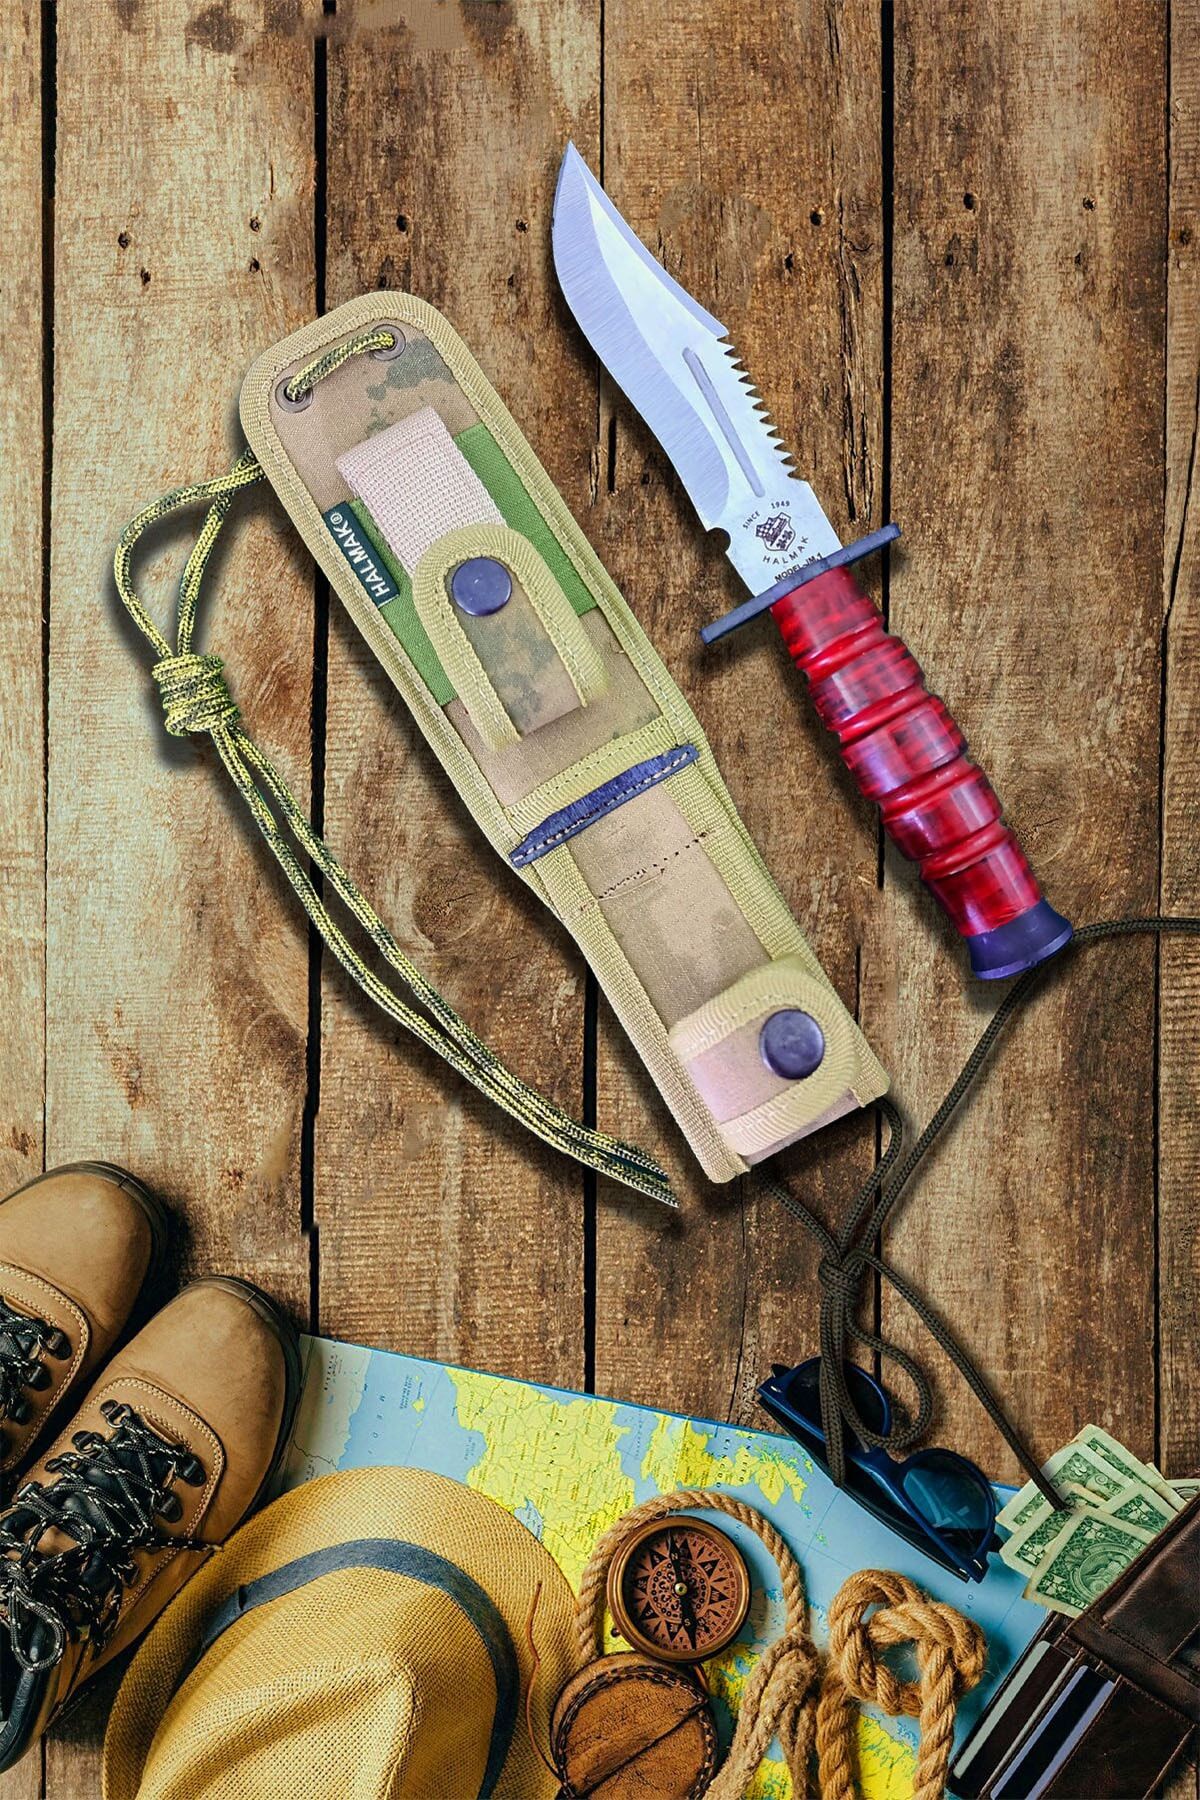 Halmak Outdoor Bıçak Mutfak Bıçak Komando Rambo Kamp Av Bıçak Çakı Kılıflı (25 Cm)